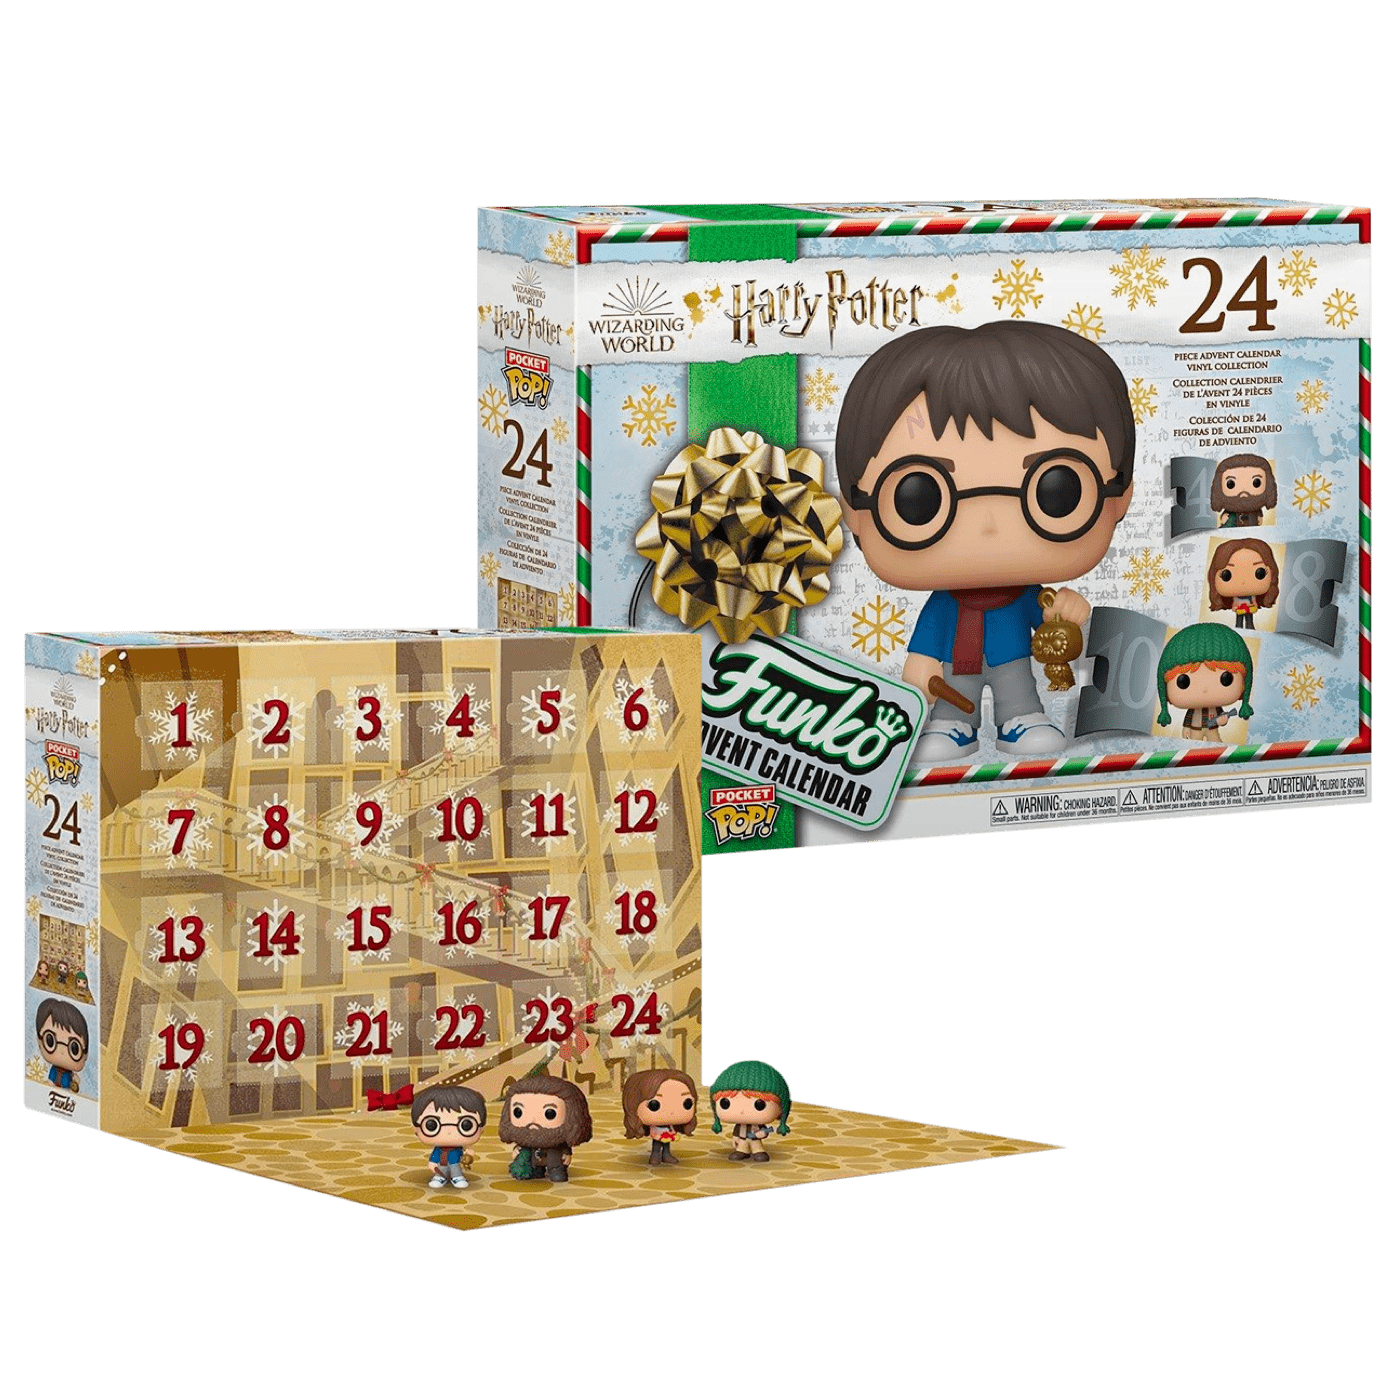 Фигурка Гарри Поттер Адвент календарь 2020 (Harry Potter Advent Calendar  2020) — Funko POP